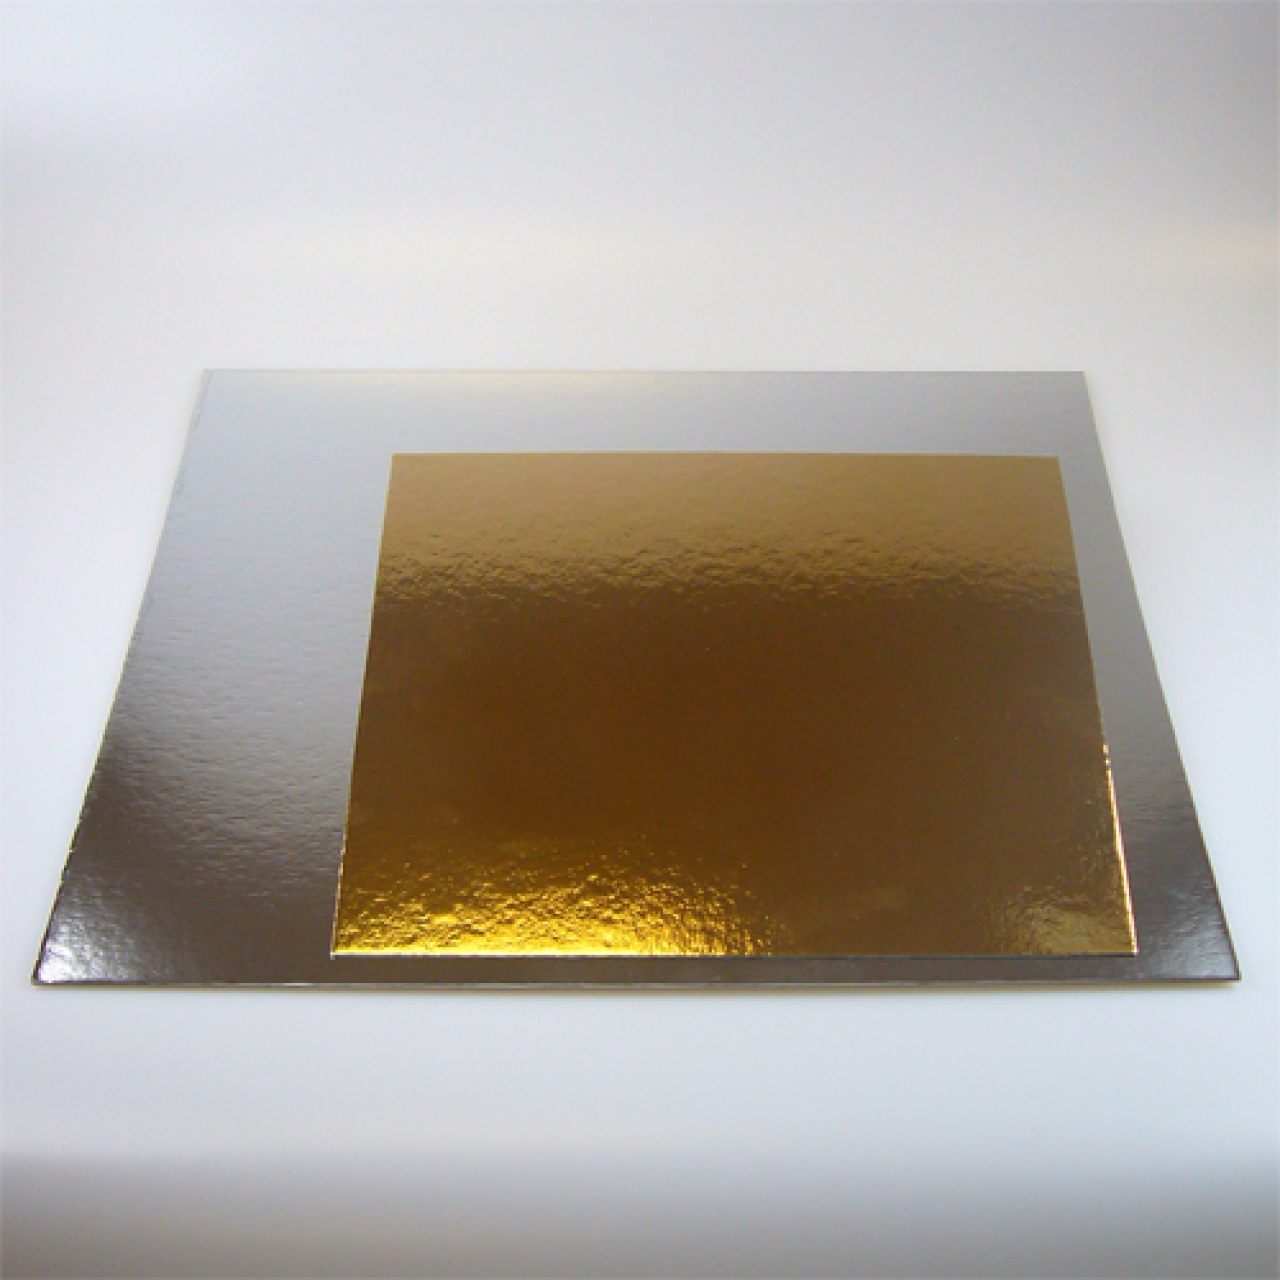 Tortenscheibe, Tortenboden gold & silber (beideseitig) 30,4 cm, quadrat, 3 Stk.